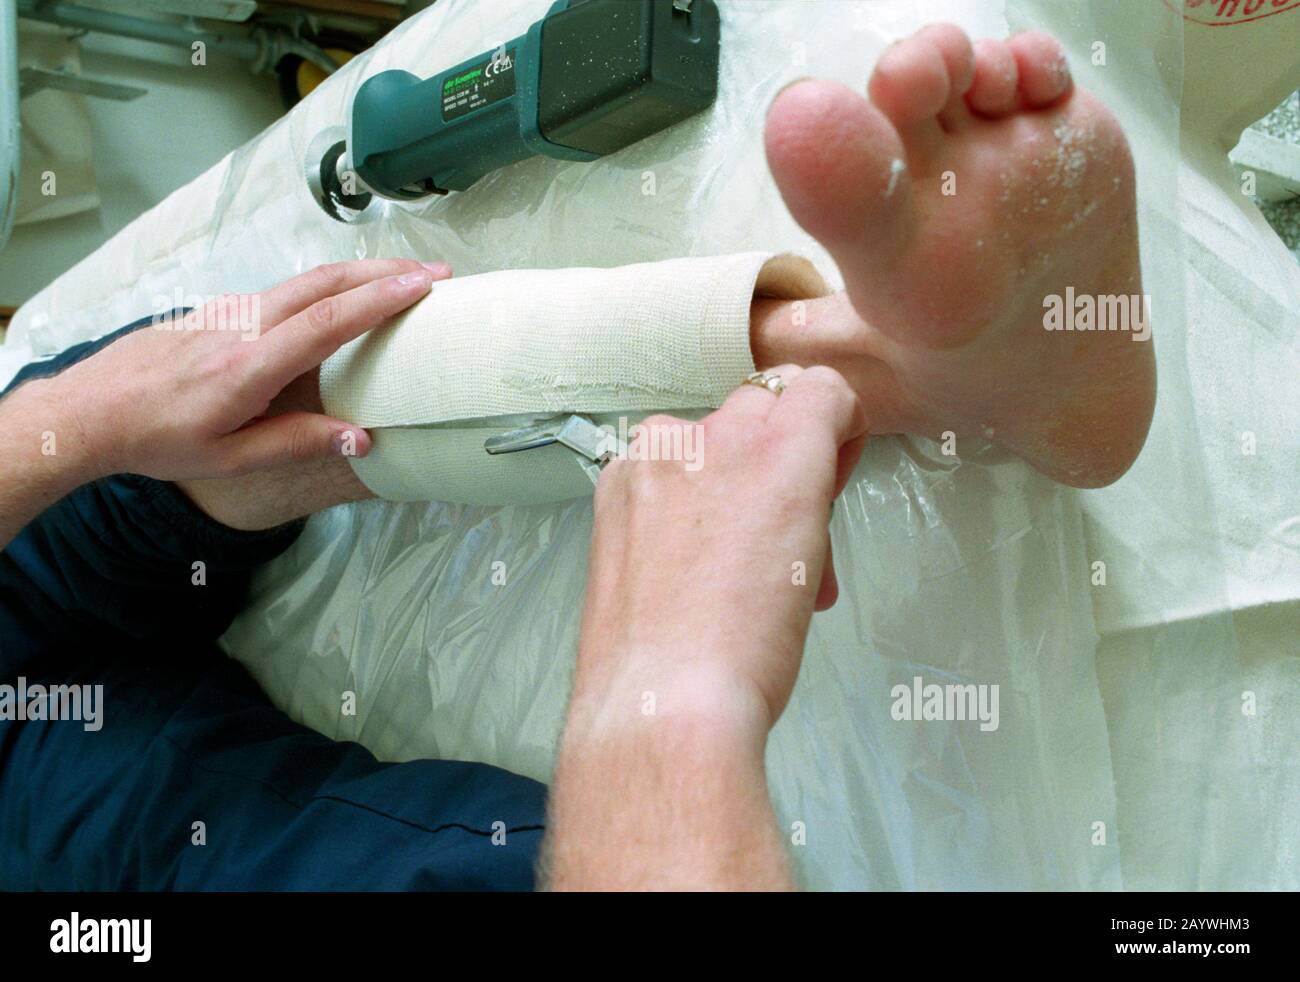 Une fois qu'un plâtre est coupé dans A&E avec la scie de découpe de plâtre, l'infirmière coupe ensuite à travers le bandage en dessous avec une paire de ciseaux de bandage Banque D'Images